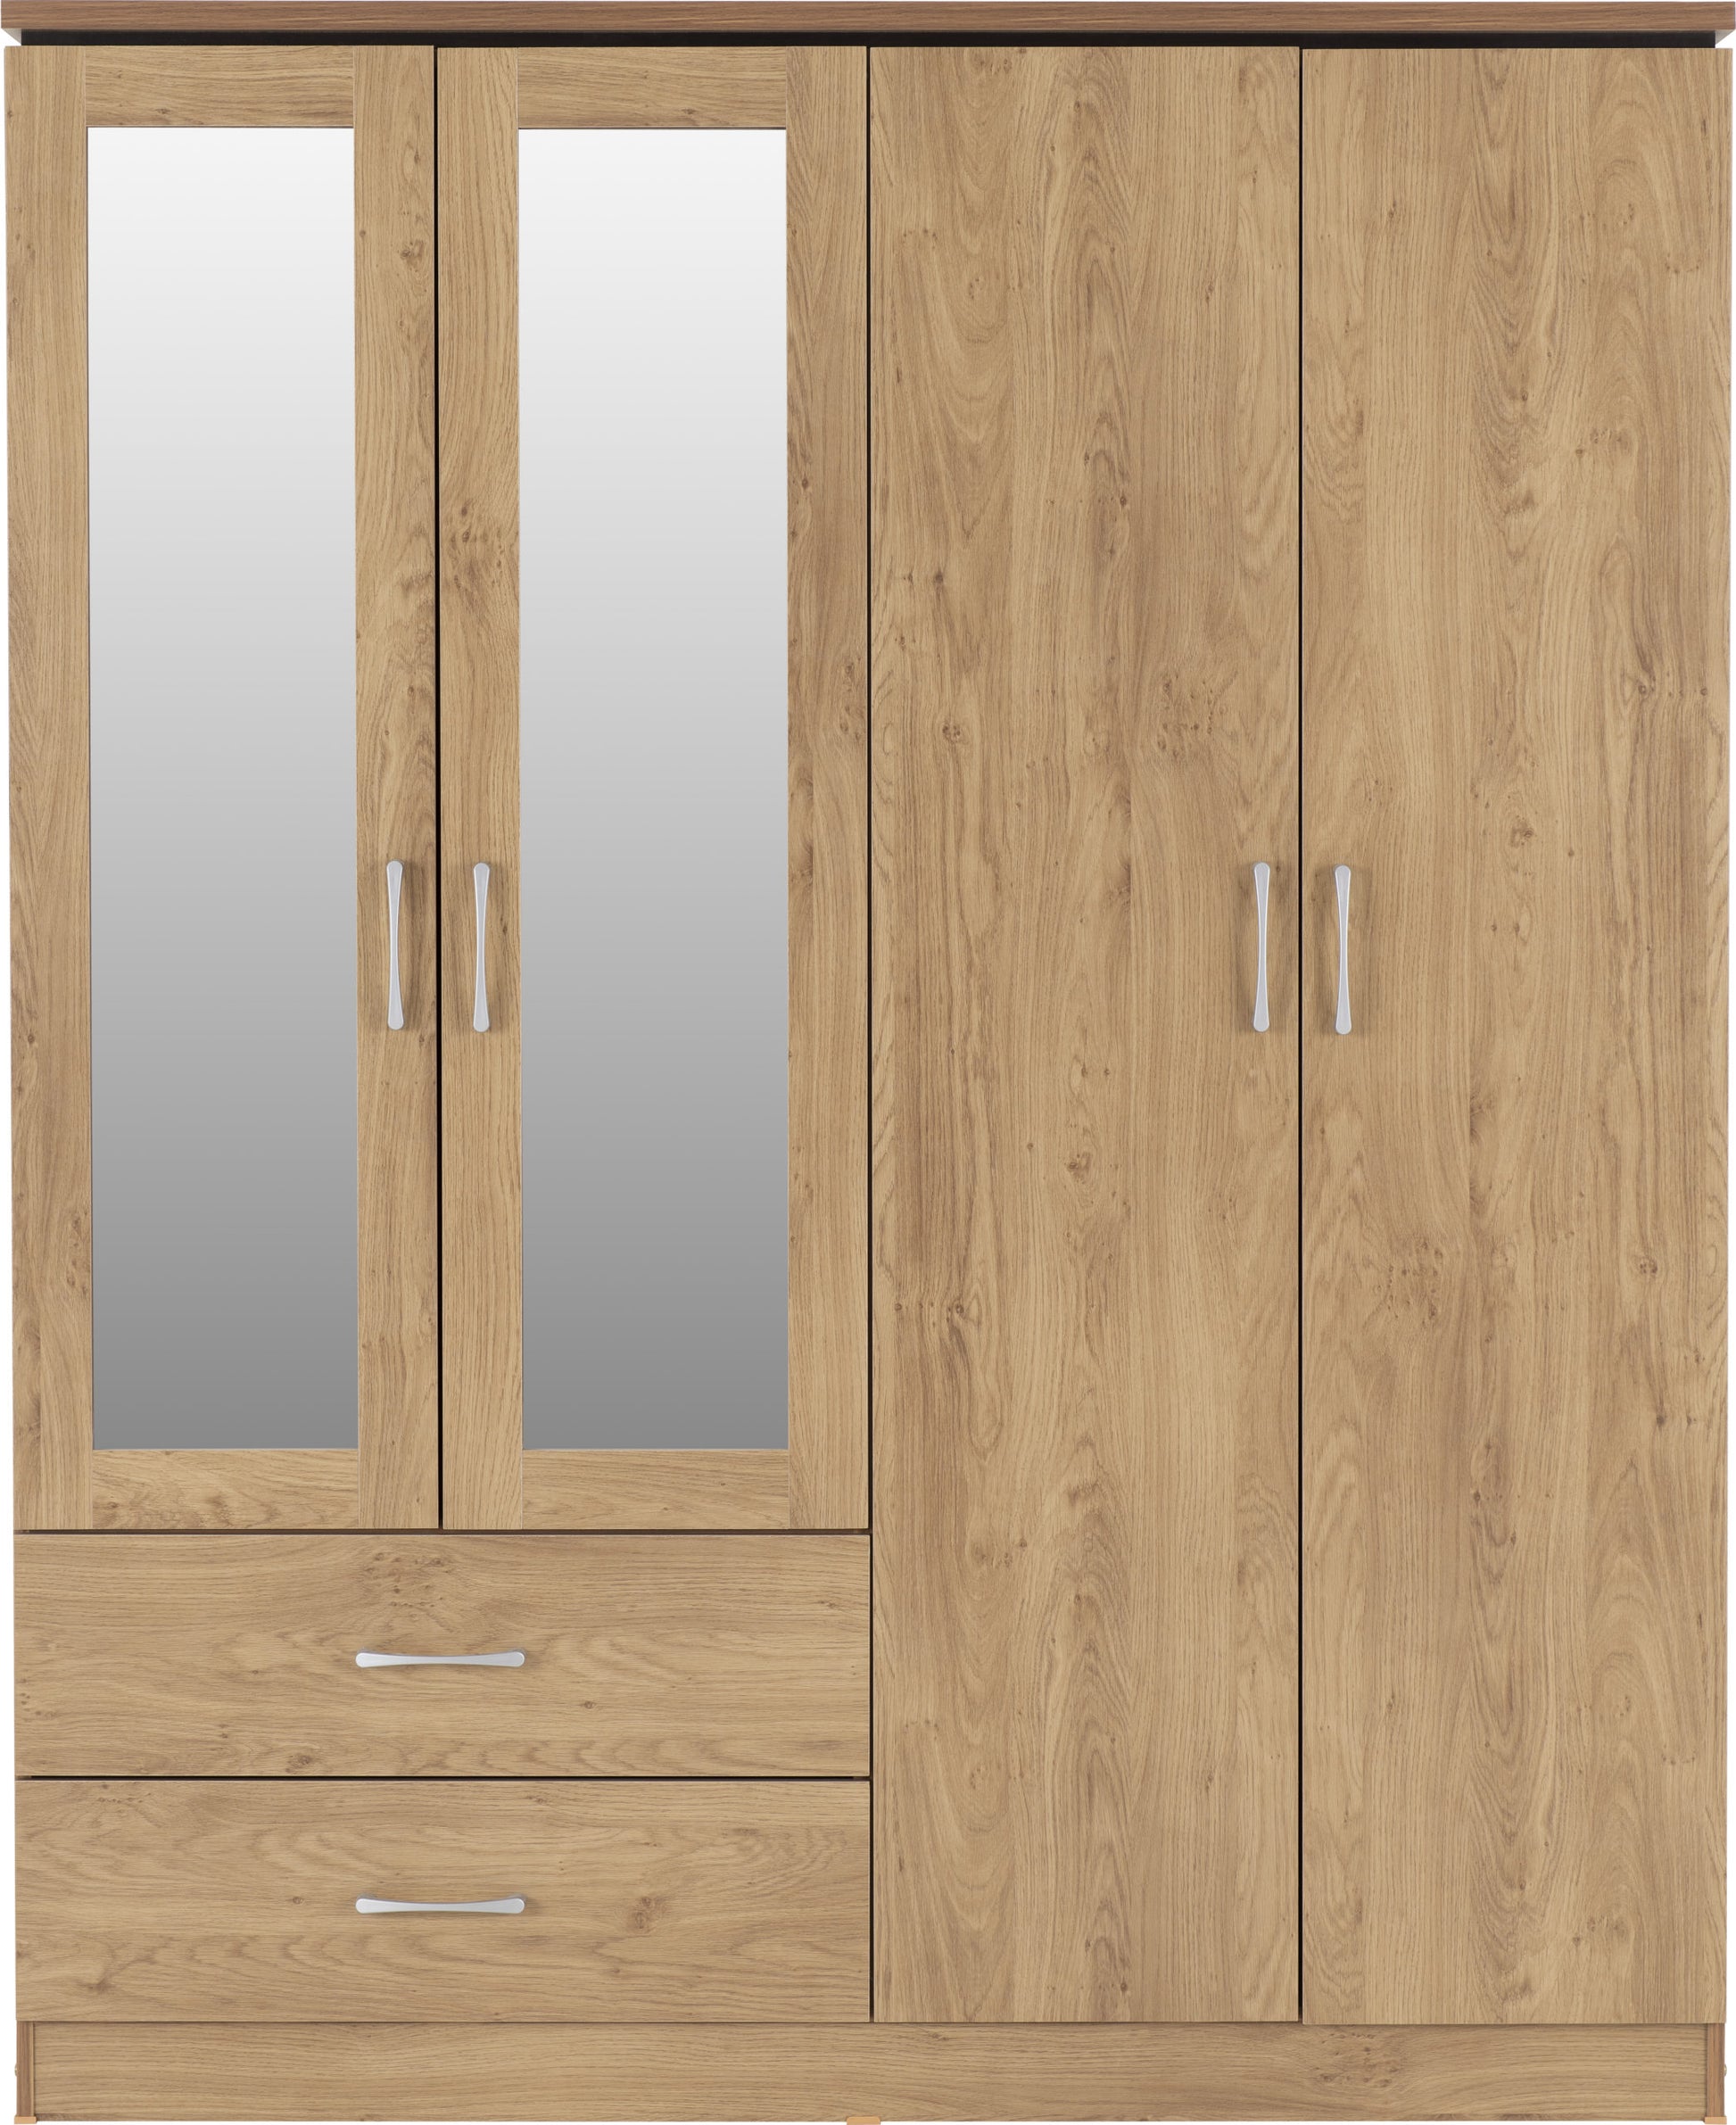 Charles 4 Door 2 Drawer Mirrored Wardrobe - Oak Effect Veneer with Walnut Trim-scaled.jpg